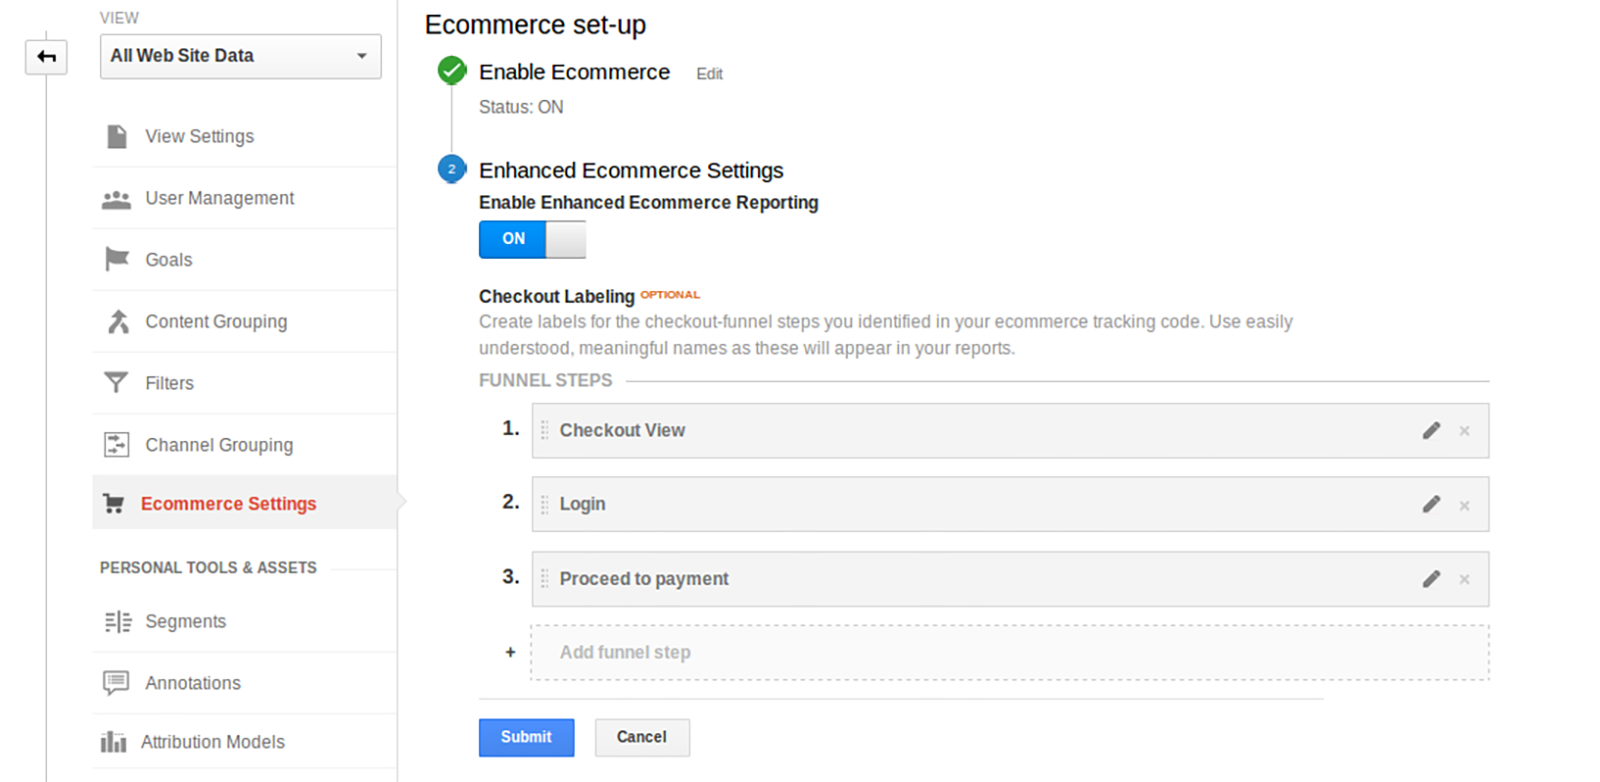 Enhanced Ecommerce Google Analytics Plugin for WooCommerce